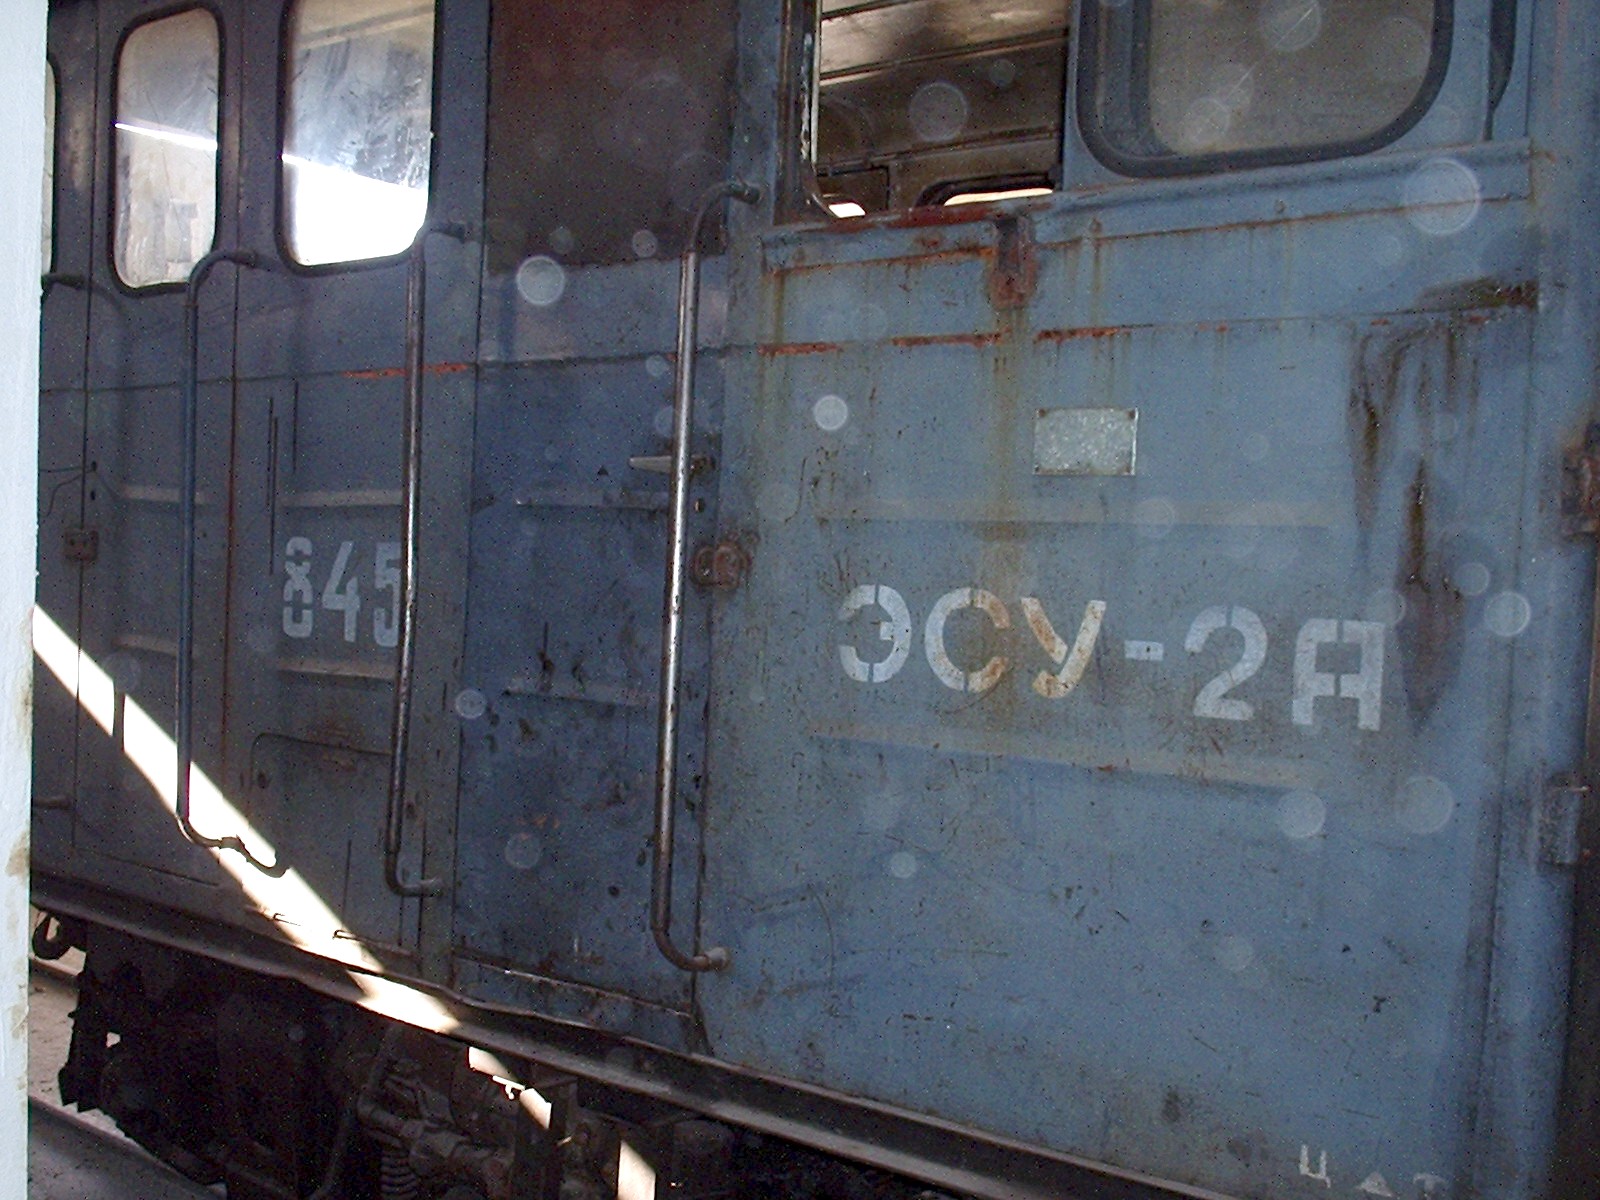 Узкоколейная железная дорога Басьяновского торфопредприятия - фотографии (часть 3)